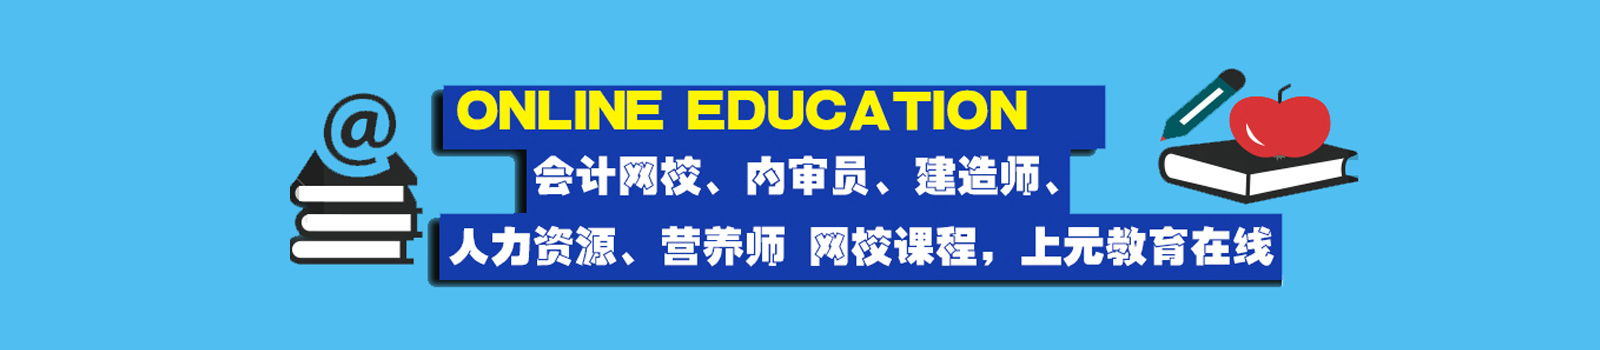 南京邦元教育中心